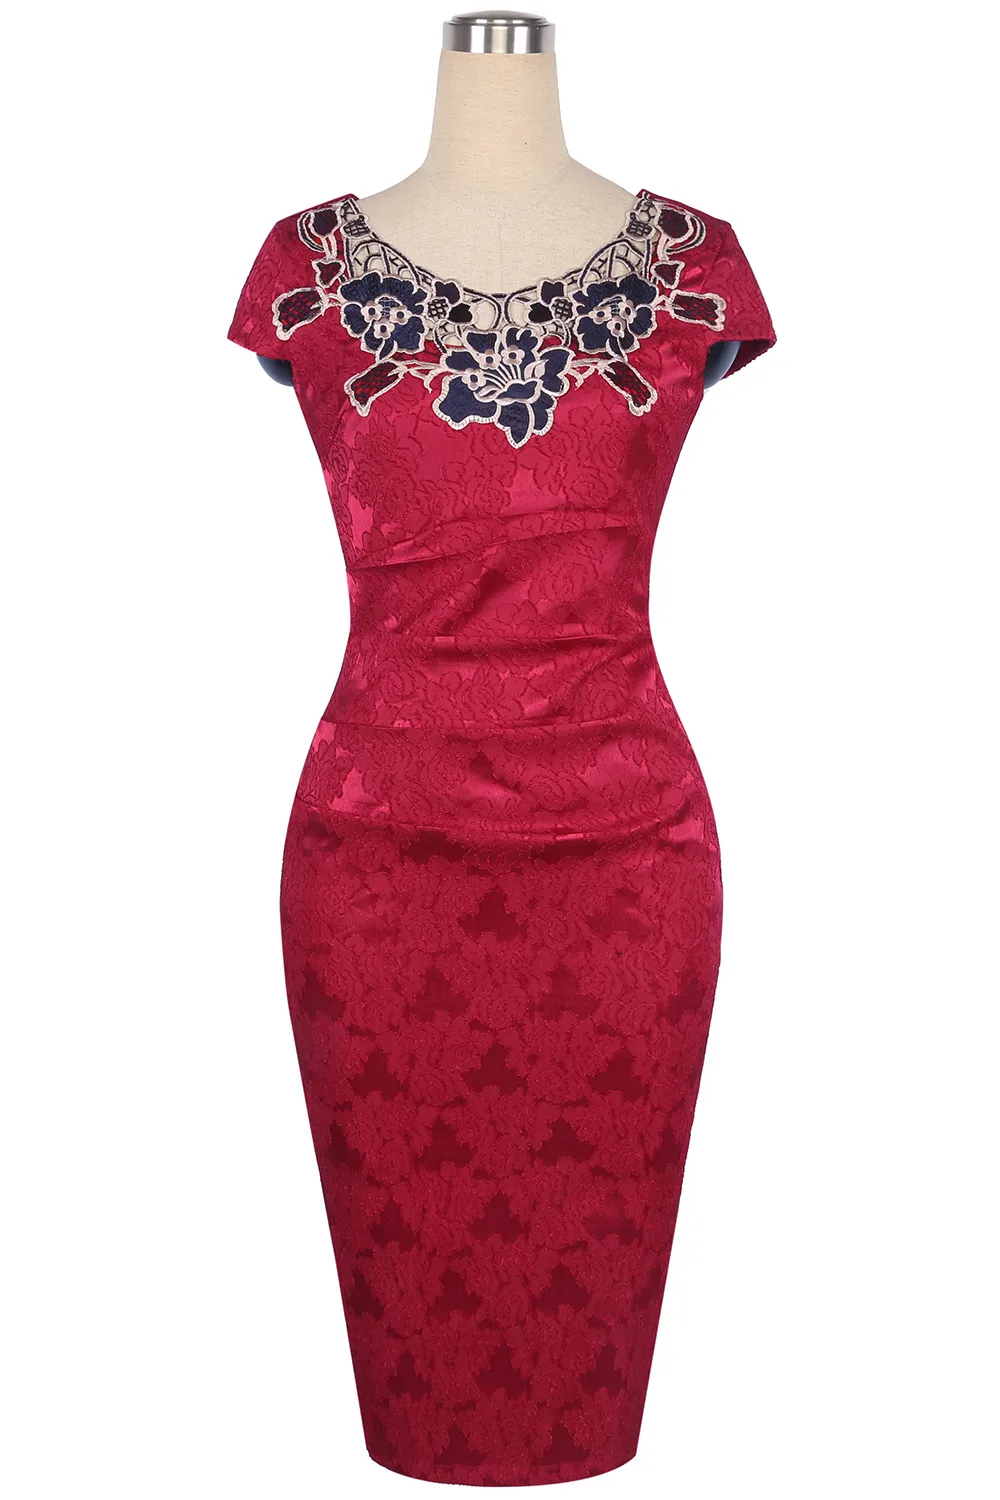 Elegante schede vintage jurk 50s 60s retro voor vrouwen marine rode bloemen nekband midi feestjurken fs1091 fs0009 fs0018 fs1393